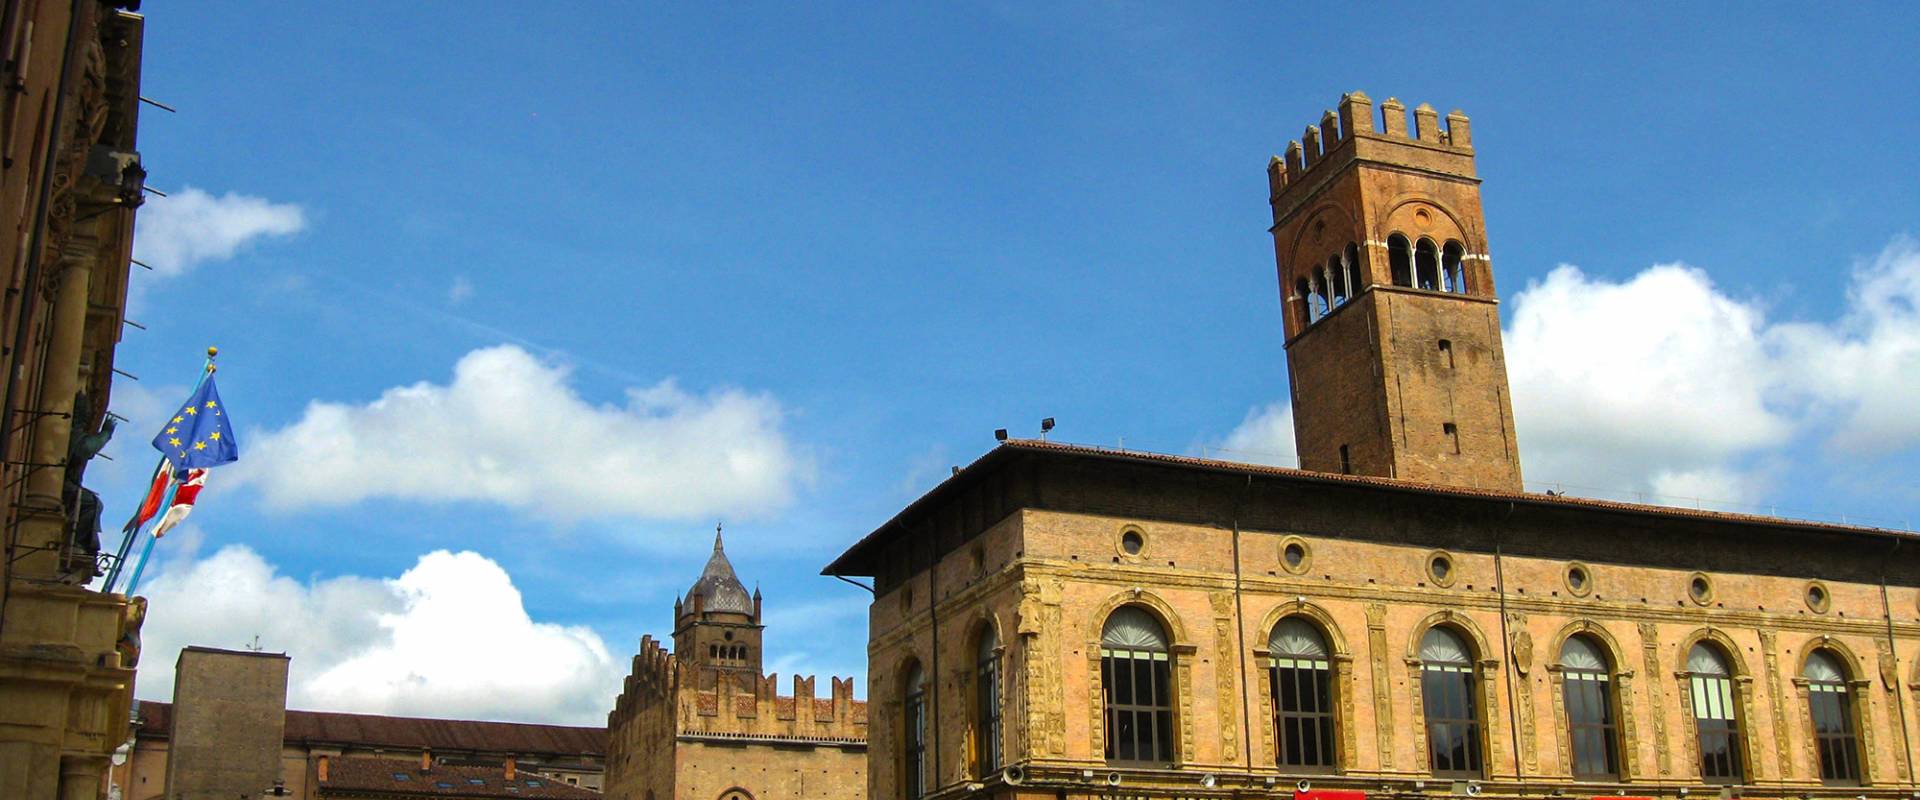 Bologna (BO), Piazza Maggiore, con Palazzo Re Enzo e Campanile della Cattedrale di San Pietro - 2013 foto di EvelinaRibarova